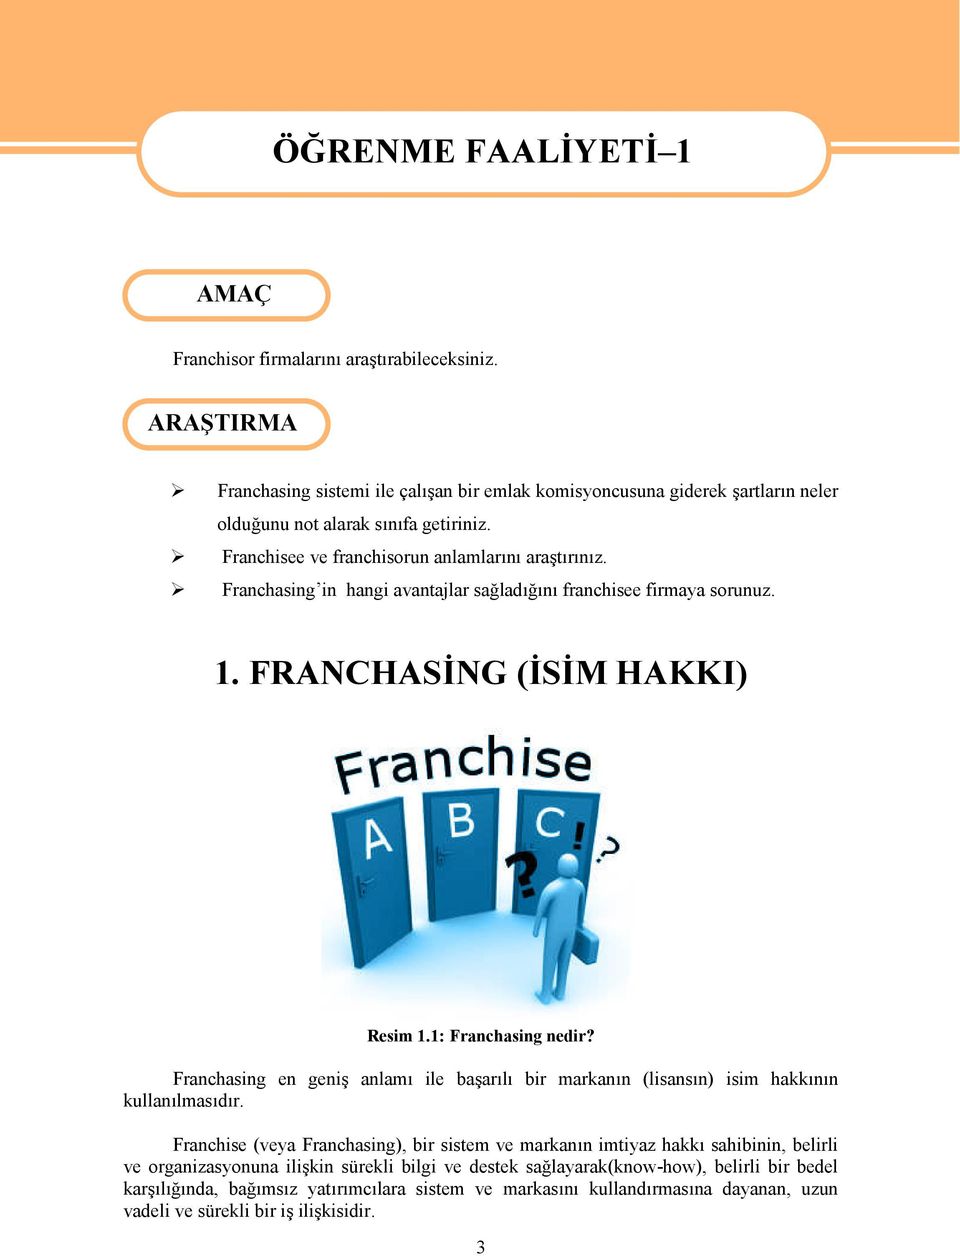 Franchasing in hangi avantajlar sağladığını franchisee firmaya sorunuz. 1. FRANCHASİNG (İSİM HAKKI) Resim 1.1: Franchasing nedir?